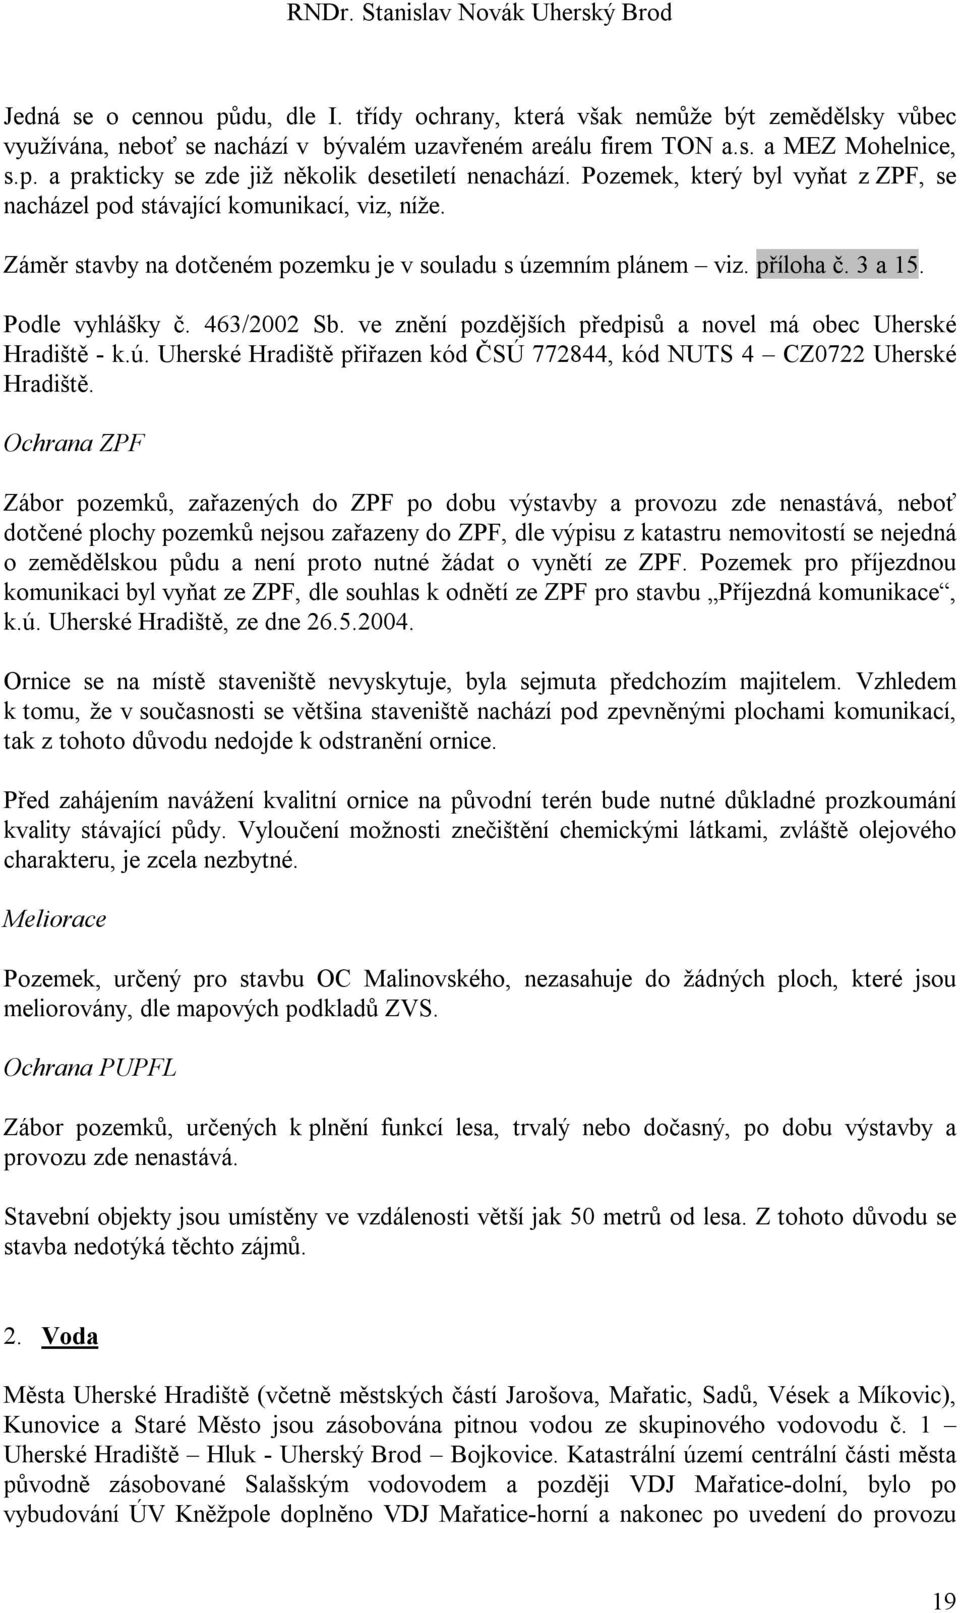 ve znění pozdějších předpisů a novel má obec Uherské Hradiště - k.ú. Uherské Hradiště přiřazen kód ČSÚ 772844, kód NUTS 4 CZ0722 Uherské Hradiště.